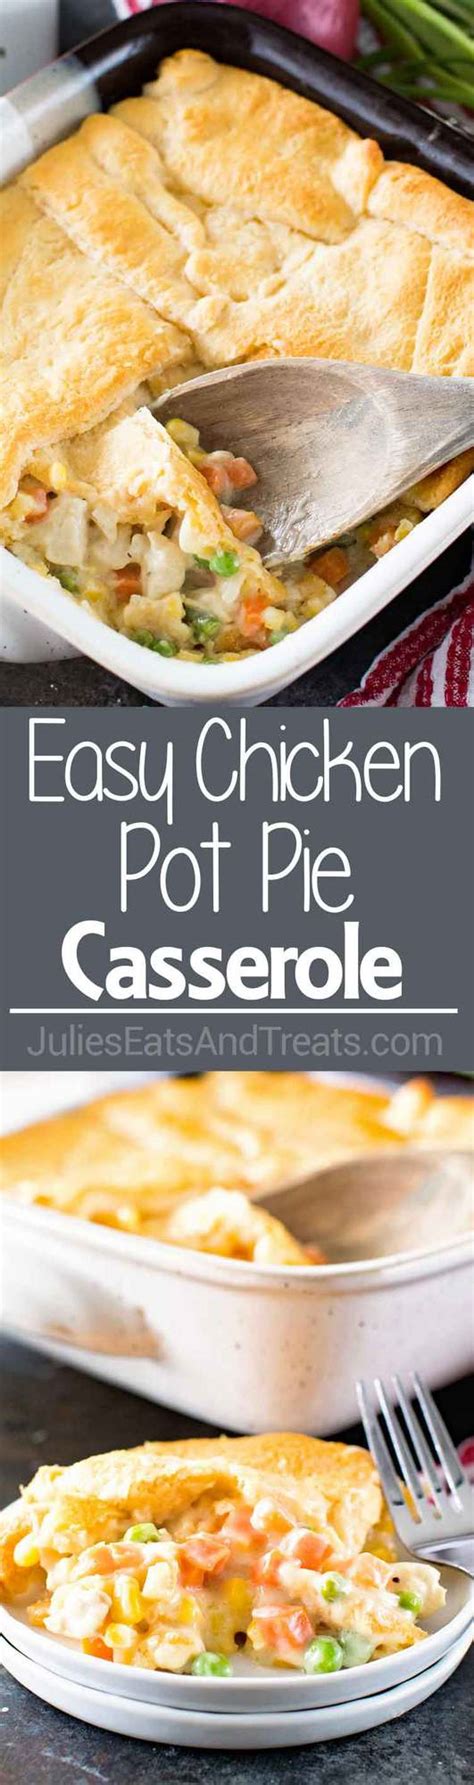 Easy Chicken Pot Pie Casserole Julies Eats And Treats